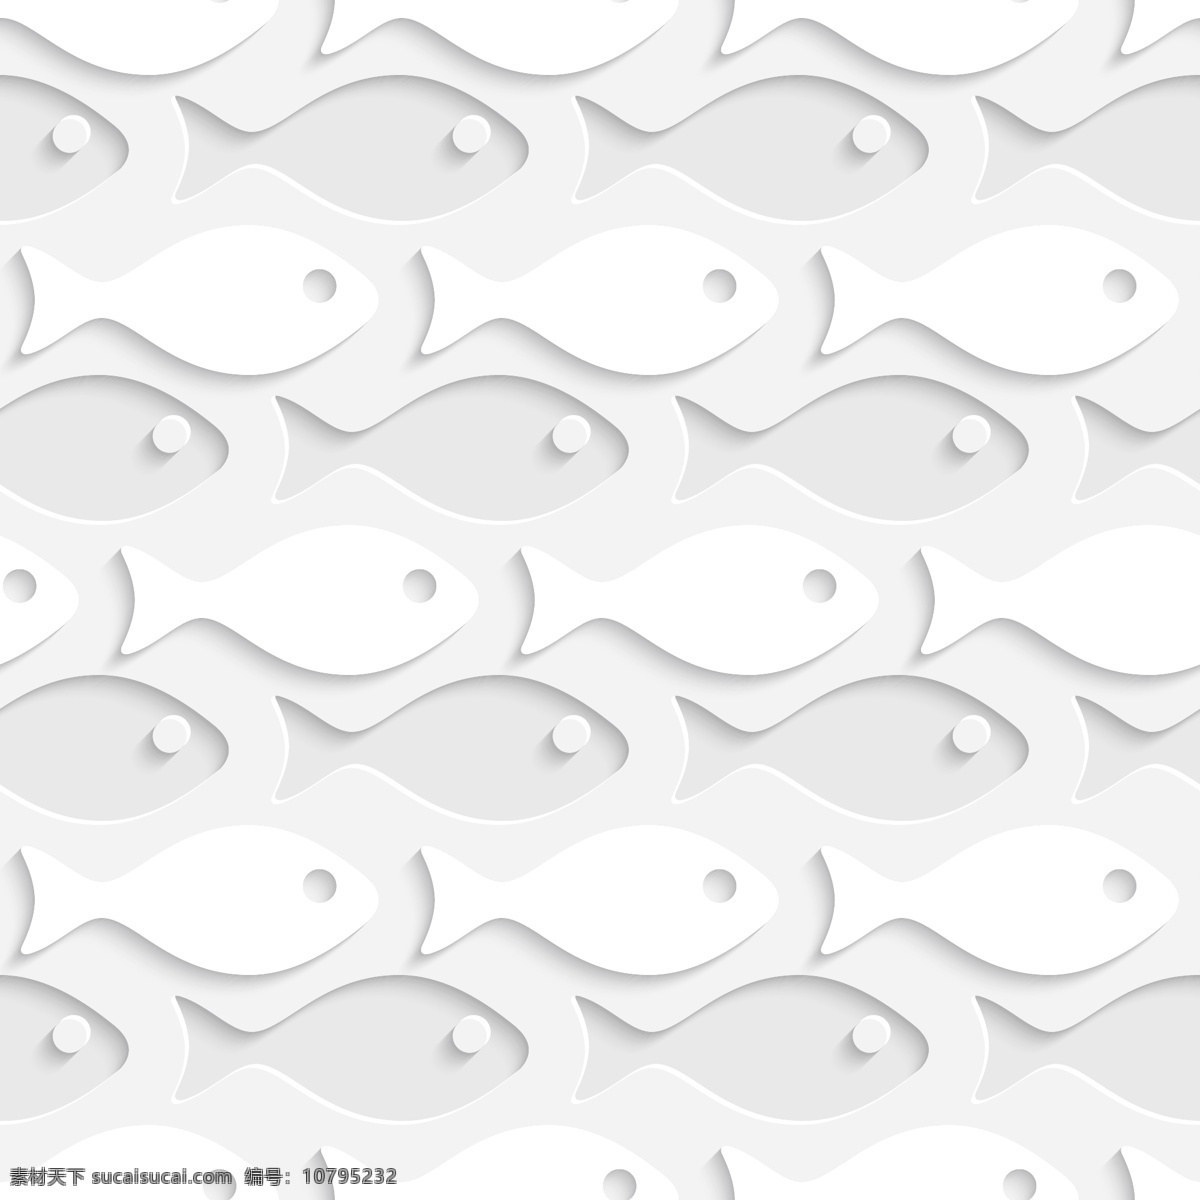 白色 纸鱼 无缝 背景 矢量 素雅 无缝背景 精美